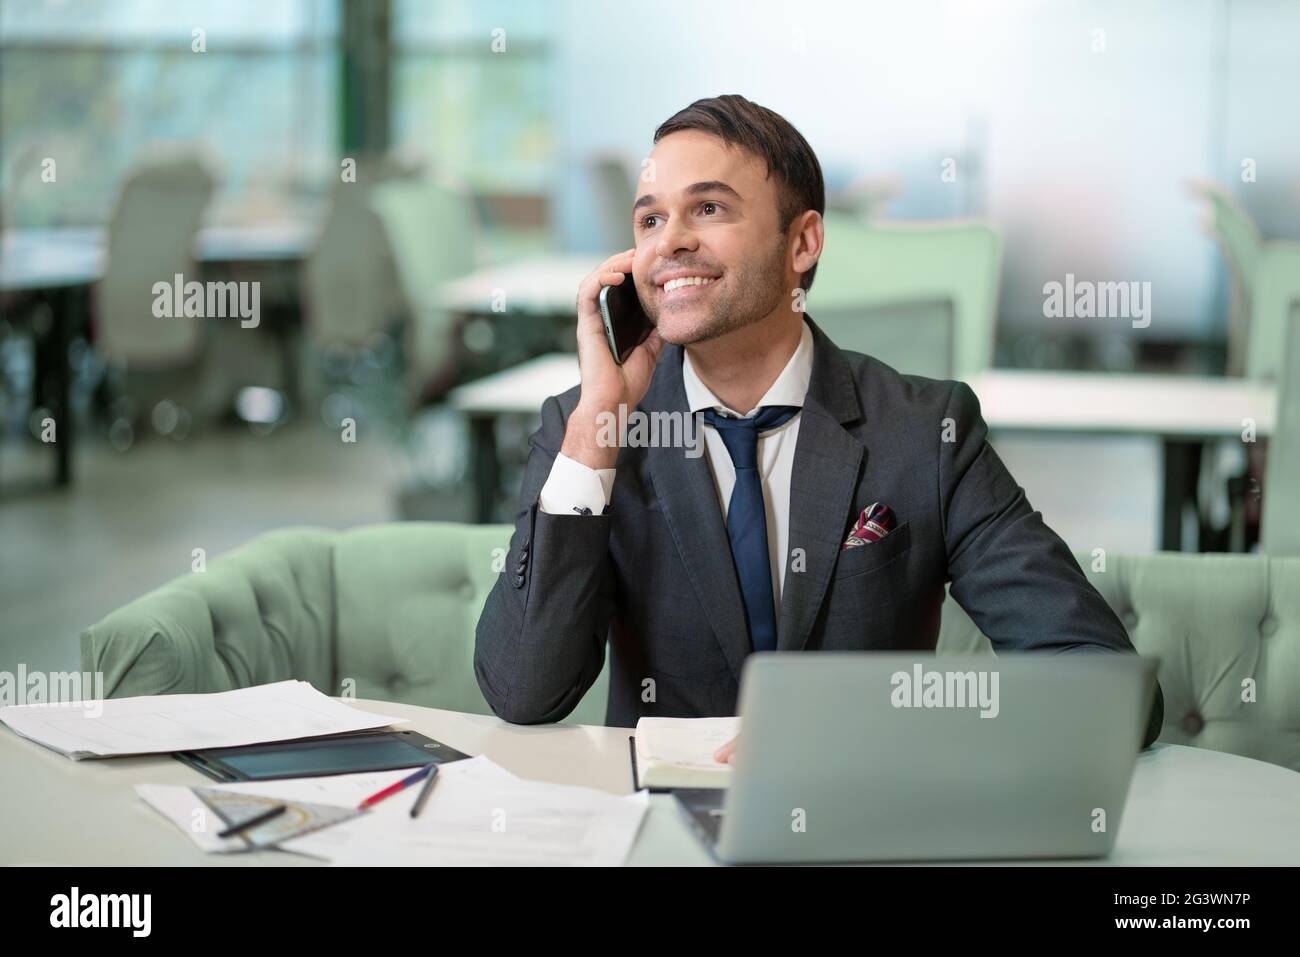 Beau homme en costume de travail parlant sur le téléphone de travail sur ordinateur portable, travail en cours. Encouragez le freelancer souriant à prendre des notes Banque D'Images